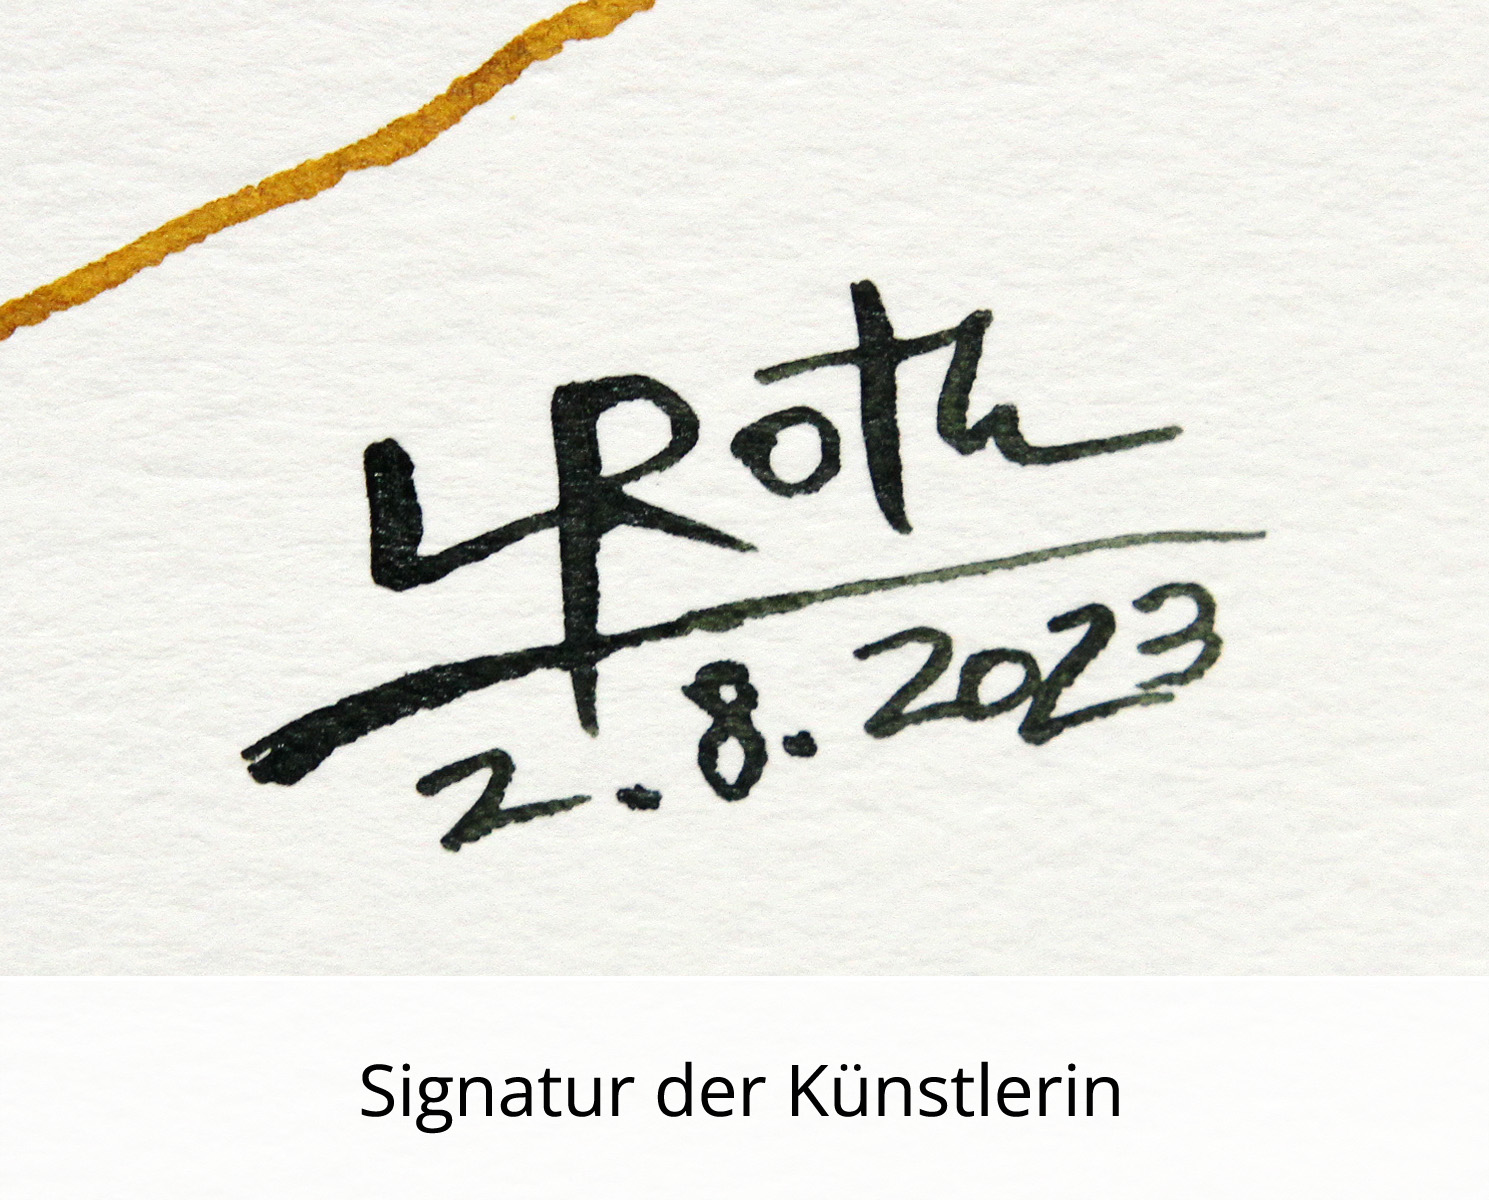 L. Roth: "Mein Uhu", originale Grafik/Zeichnung (Unikat)